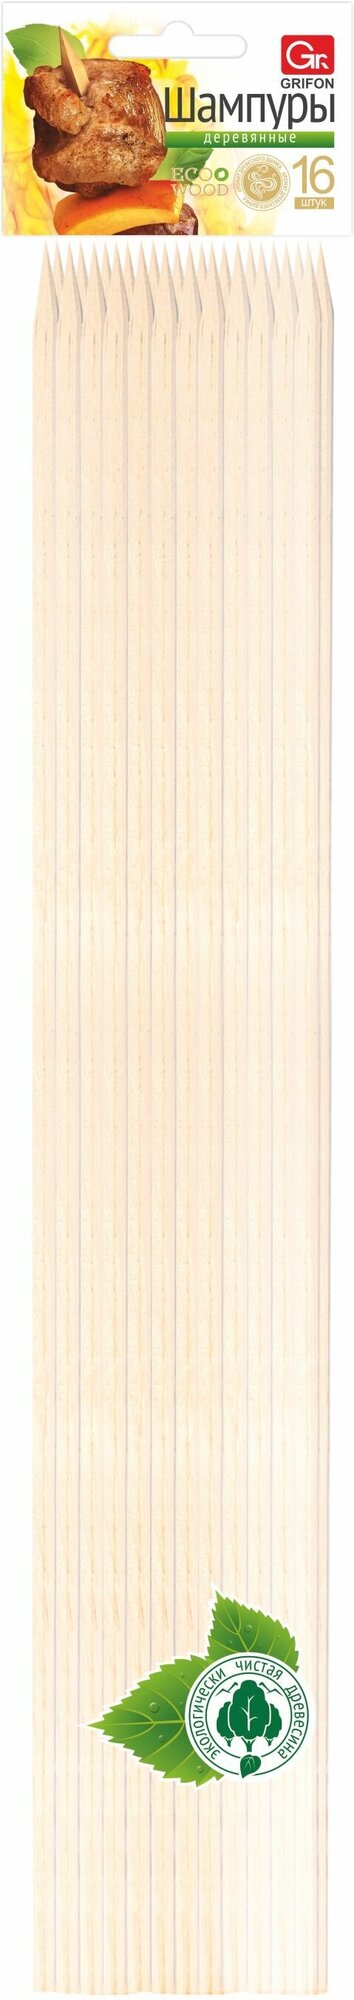 GRIFON ECO Шампуры деревянные 40 см 16 шт. в упаковке